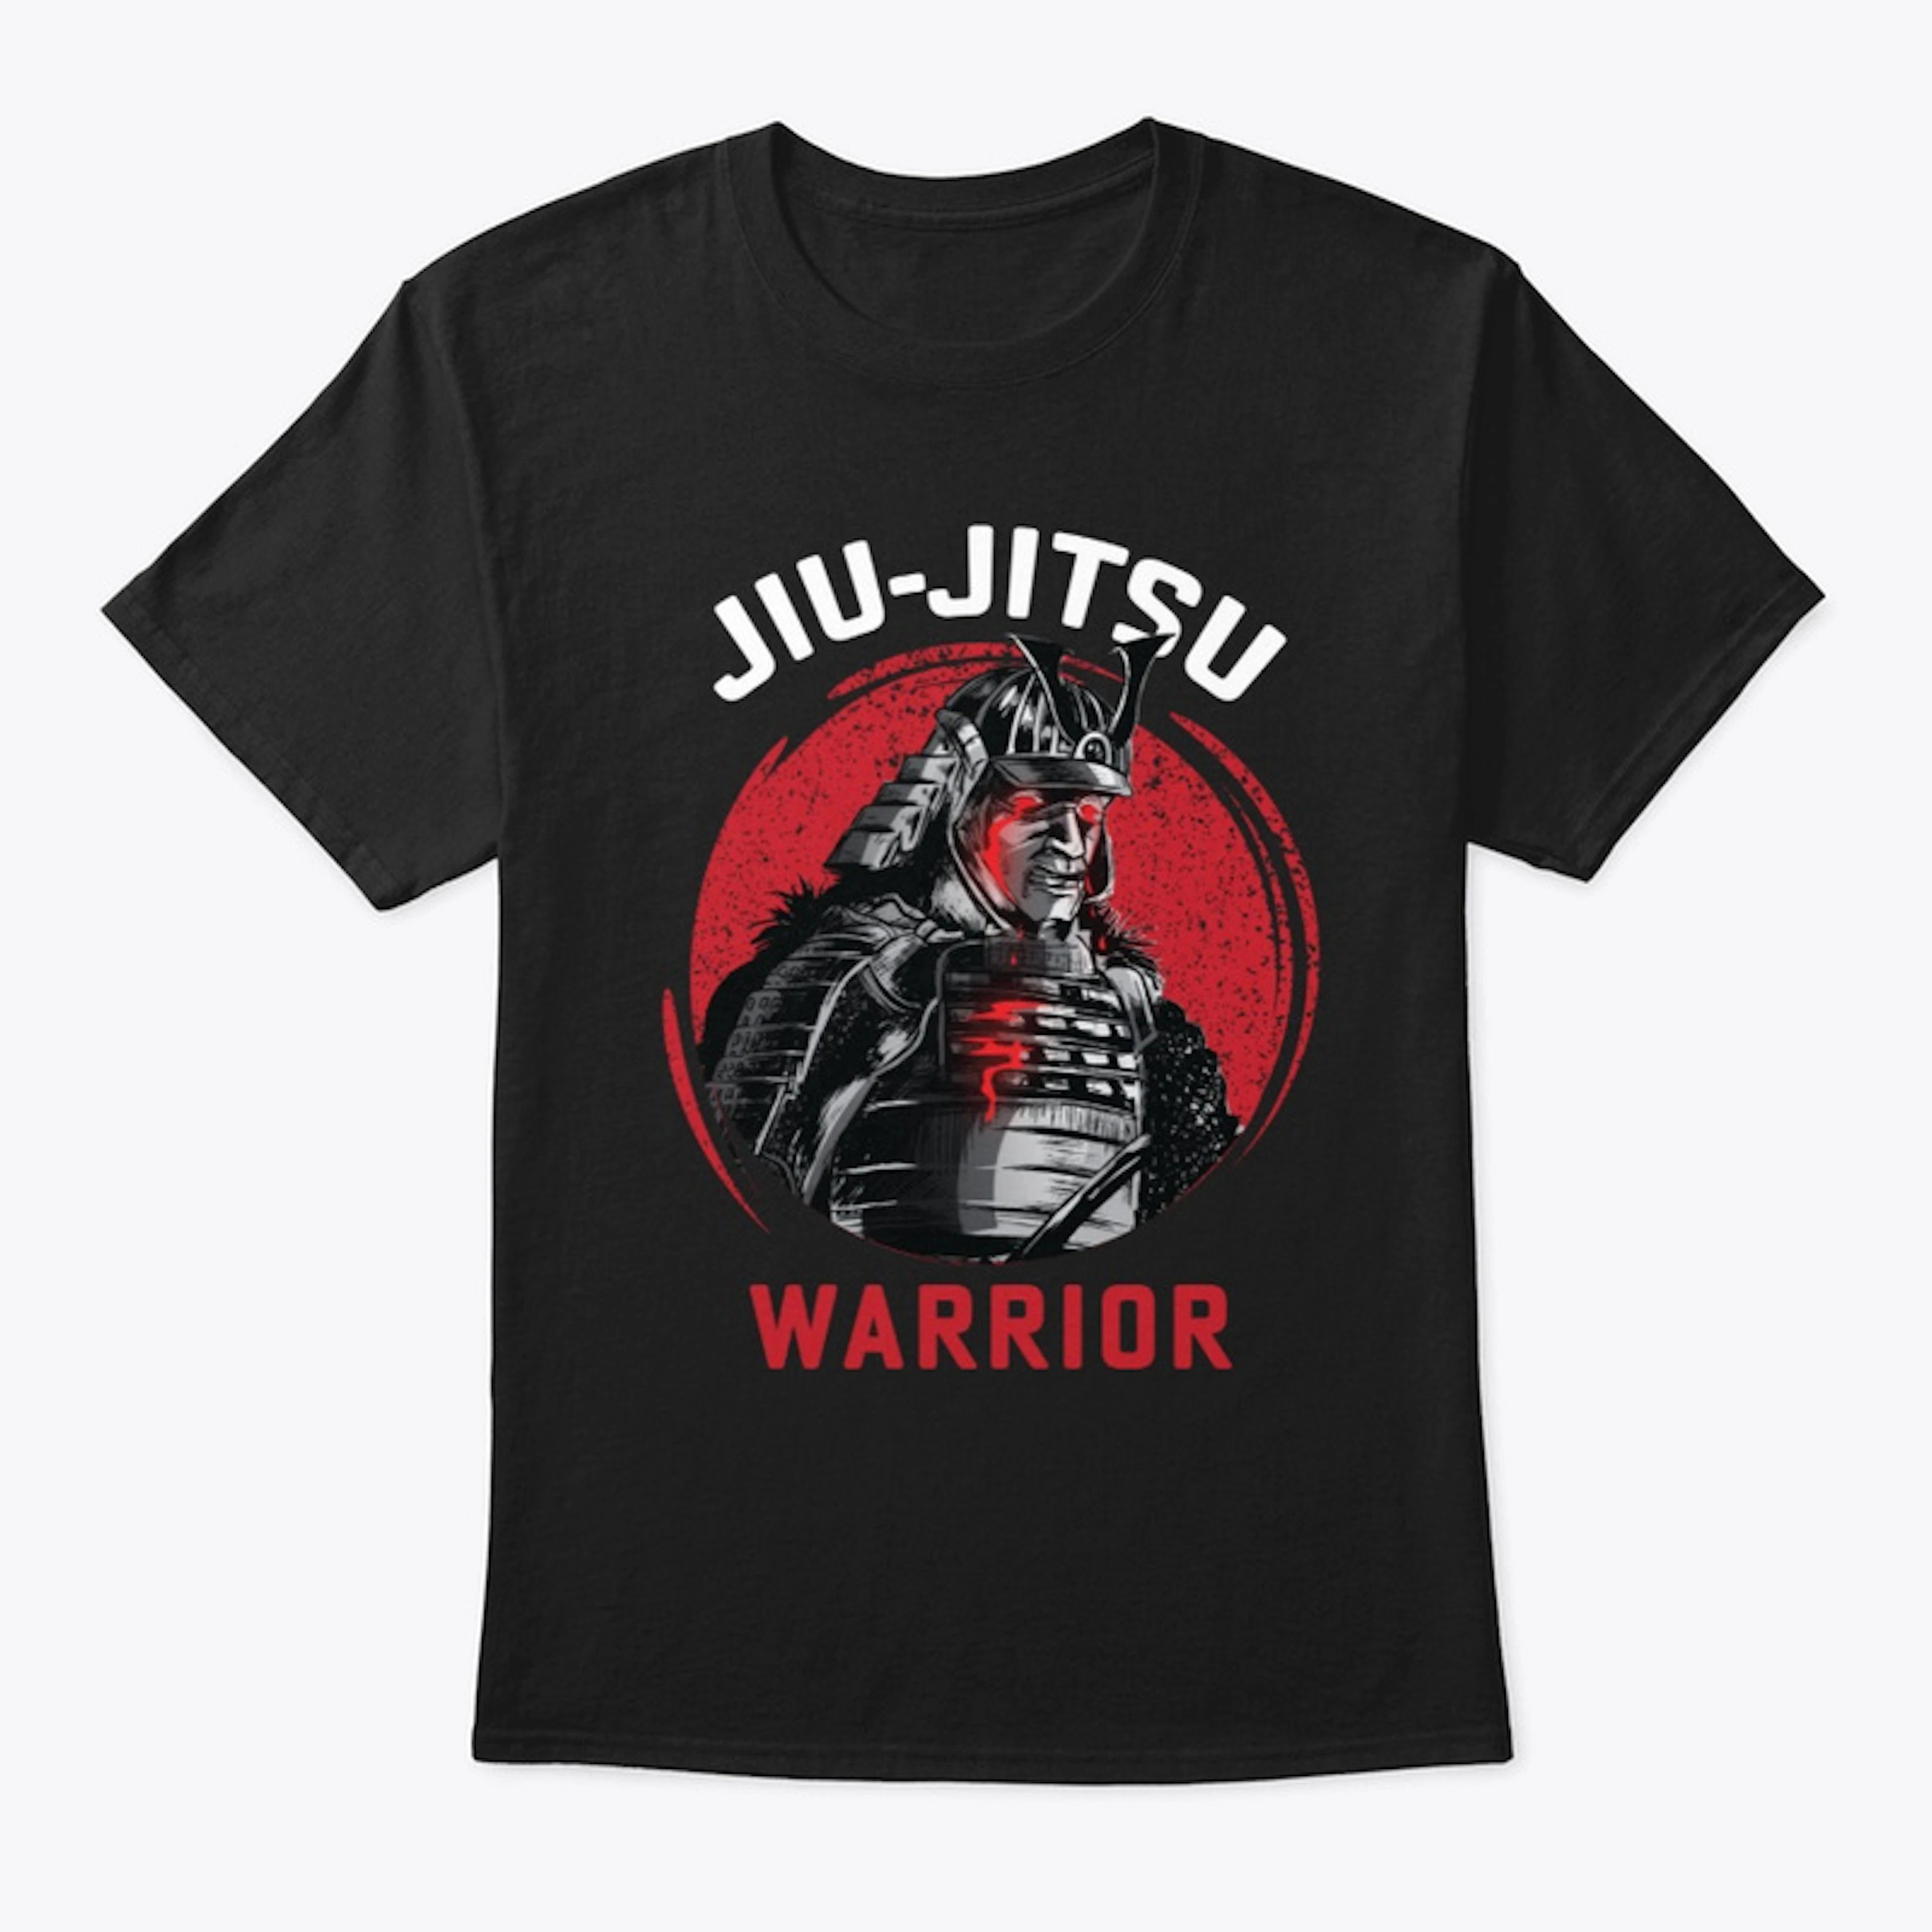 Jiu Jitsu warrior